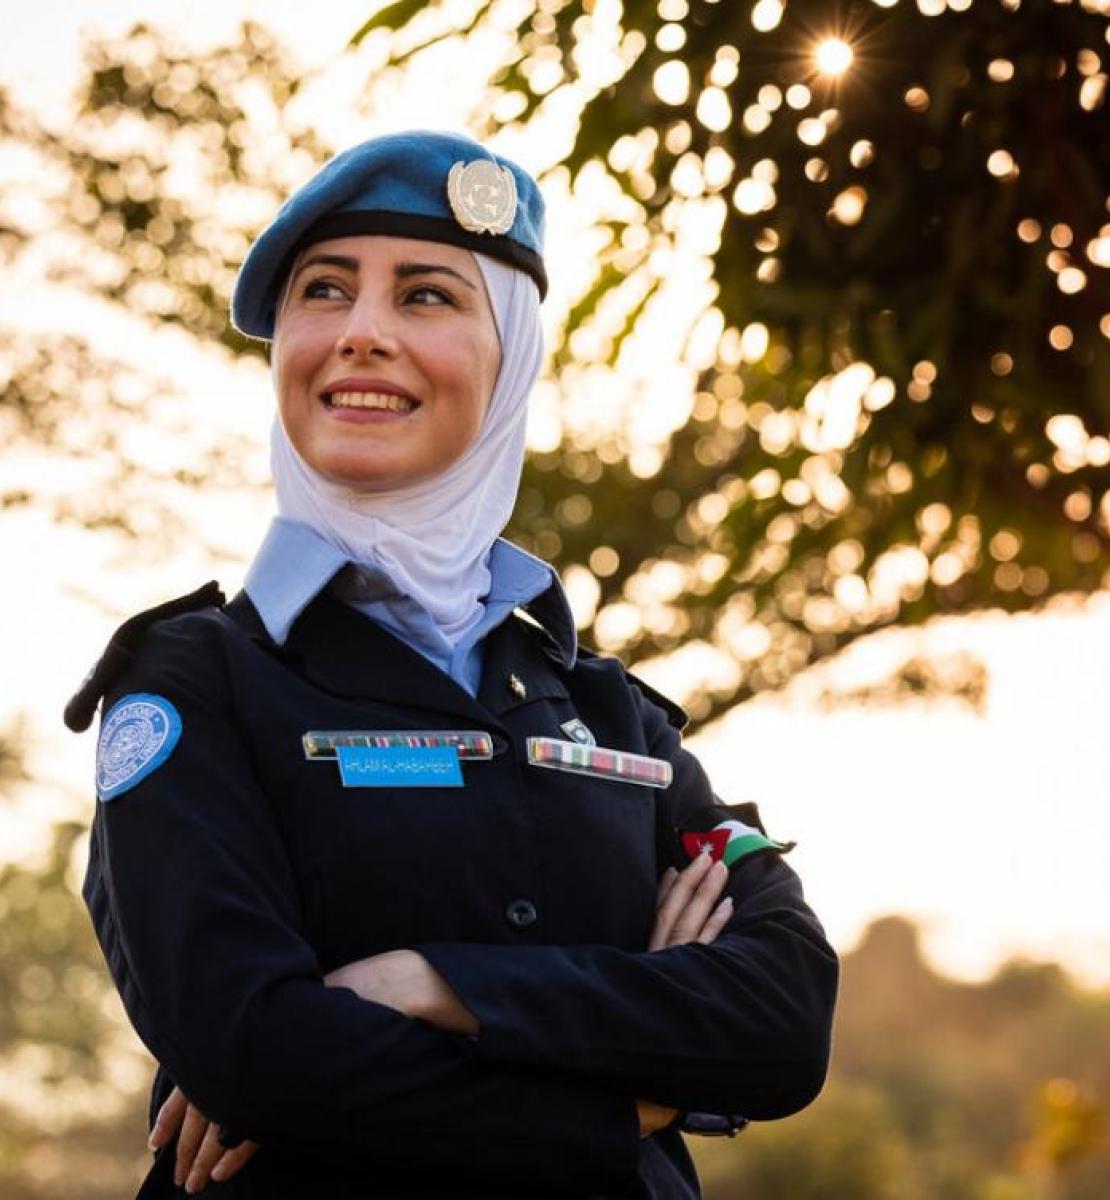 La capitana Ahlam Al-Habahbeh, orgullosa de su uniforme, posa para la cámara al aire libre junto a un árbol.